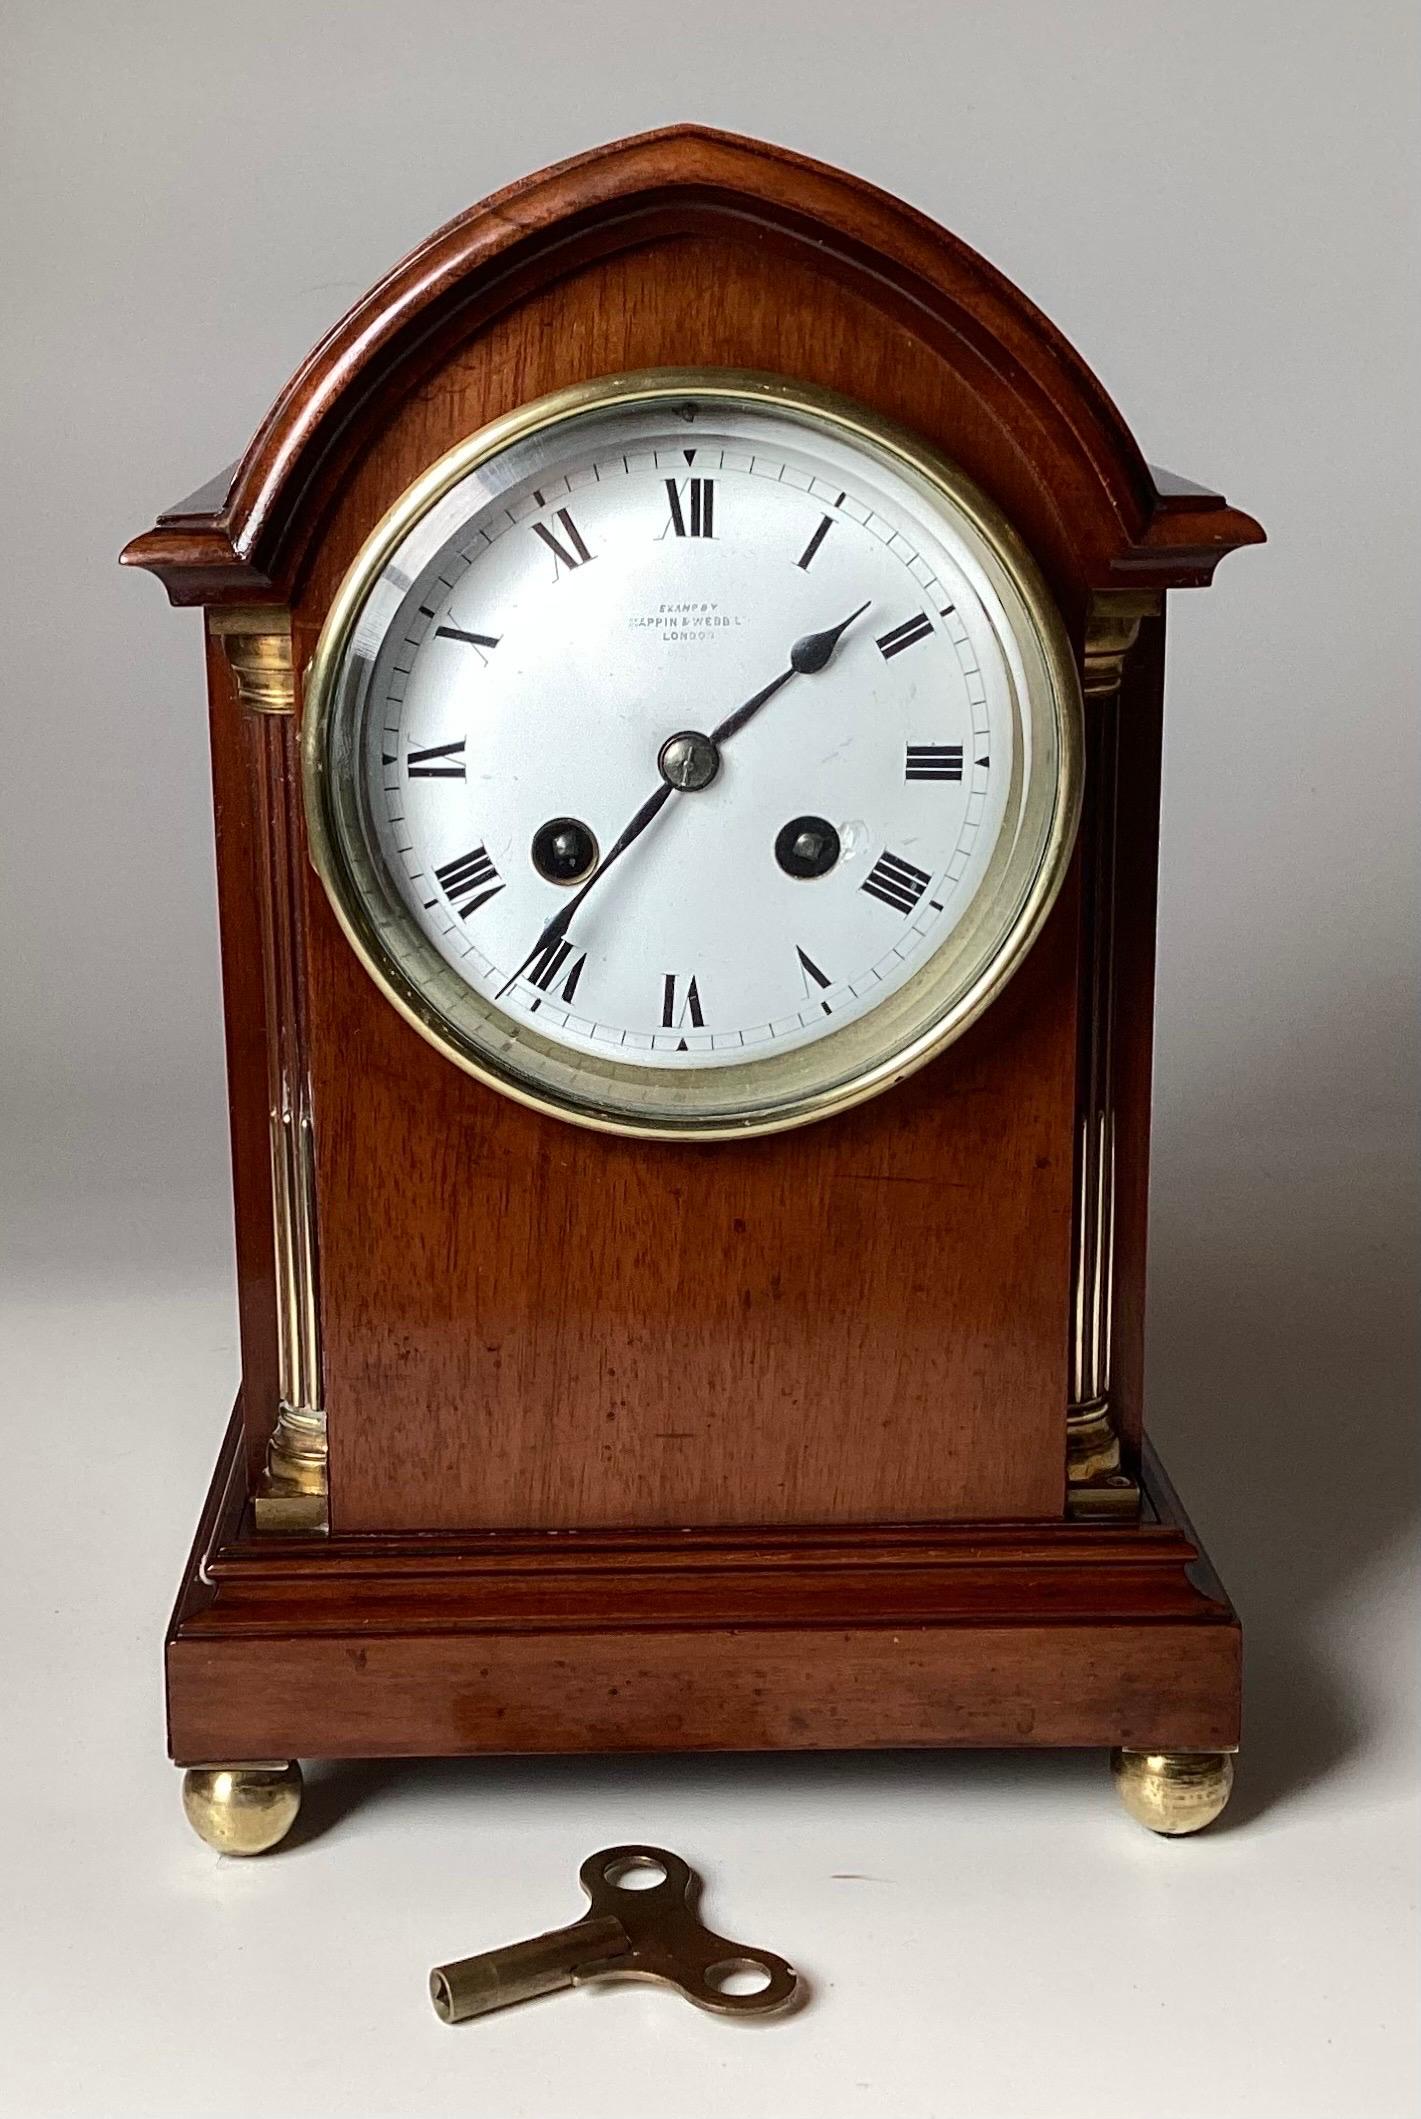 Un diminuto reloj de chimenea francés de caoba, vendido por Mappin & Webb, Londres, finales del siglo XIX. Caja de estilo Jorge III, de gusto gótico, con cuartos de columna tallados y estriados de latón, elevada sobre pequeñas patas de bola de